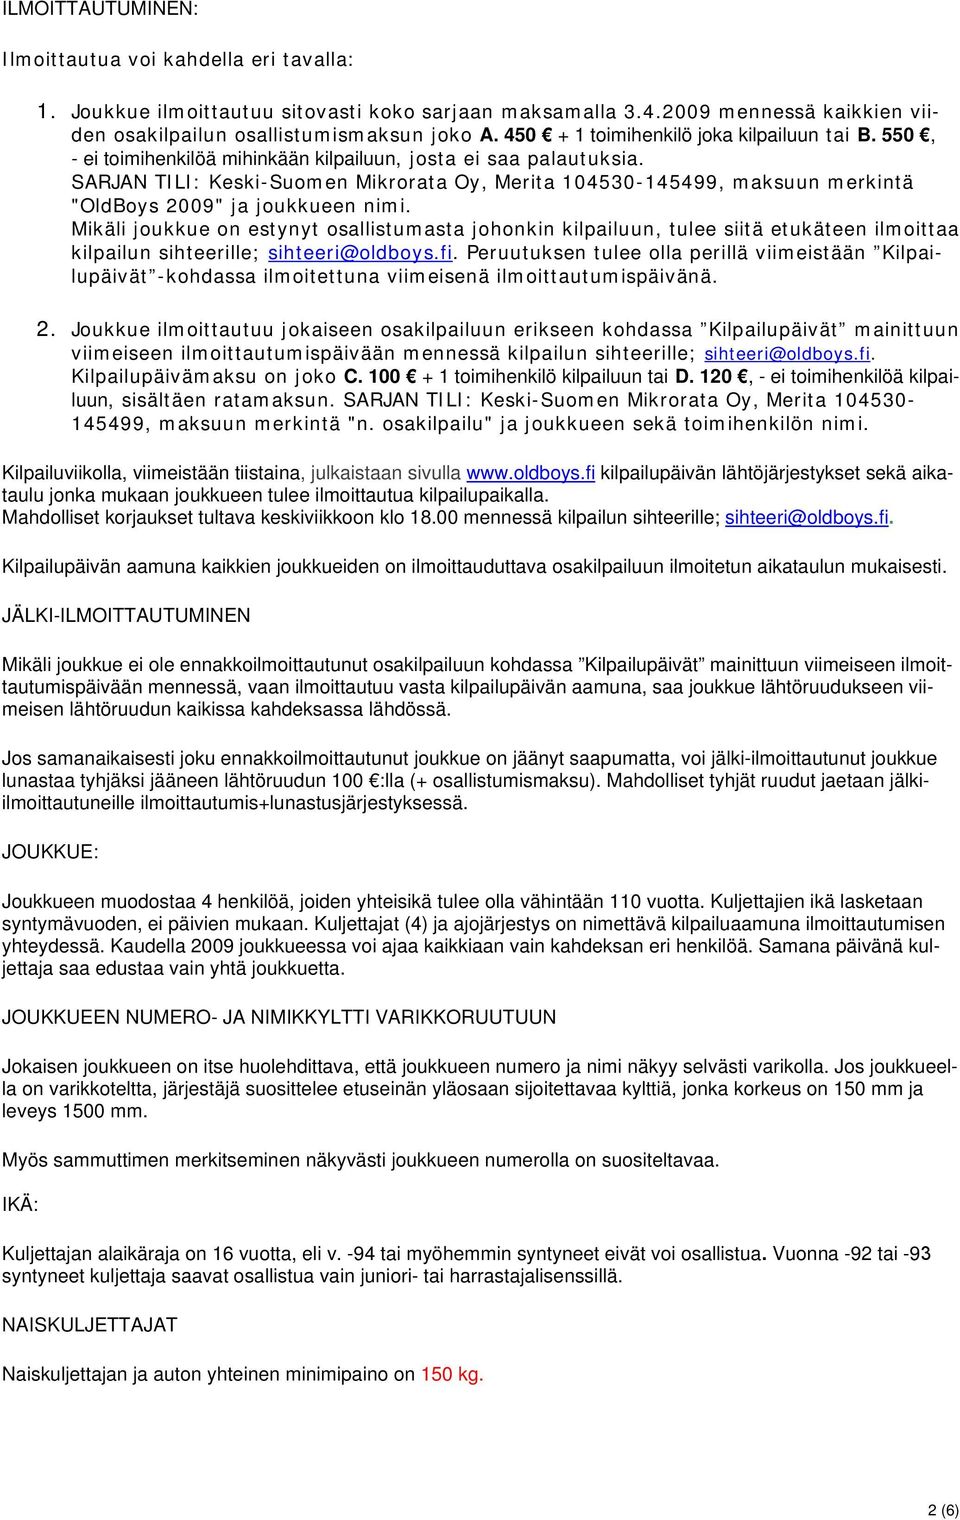 SARJAN TILI: Keski-Suomen Mikrorata Oy, Merita 104530-145499, maksuun merkintä "OldBoys 2009" ja joukkueen nimi.